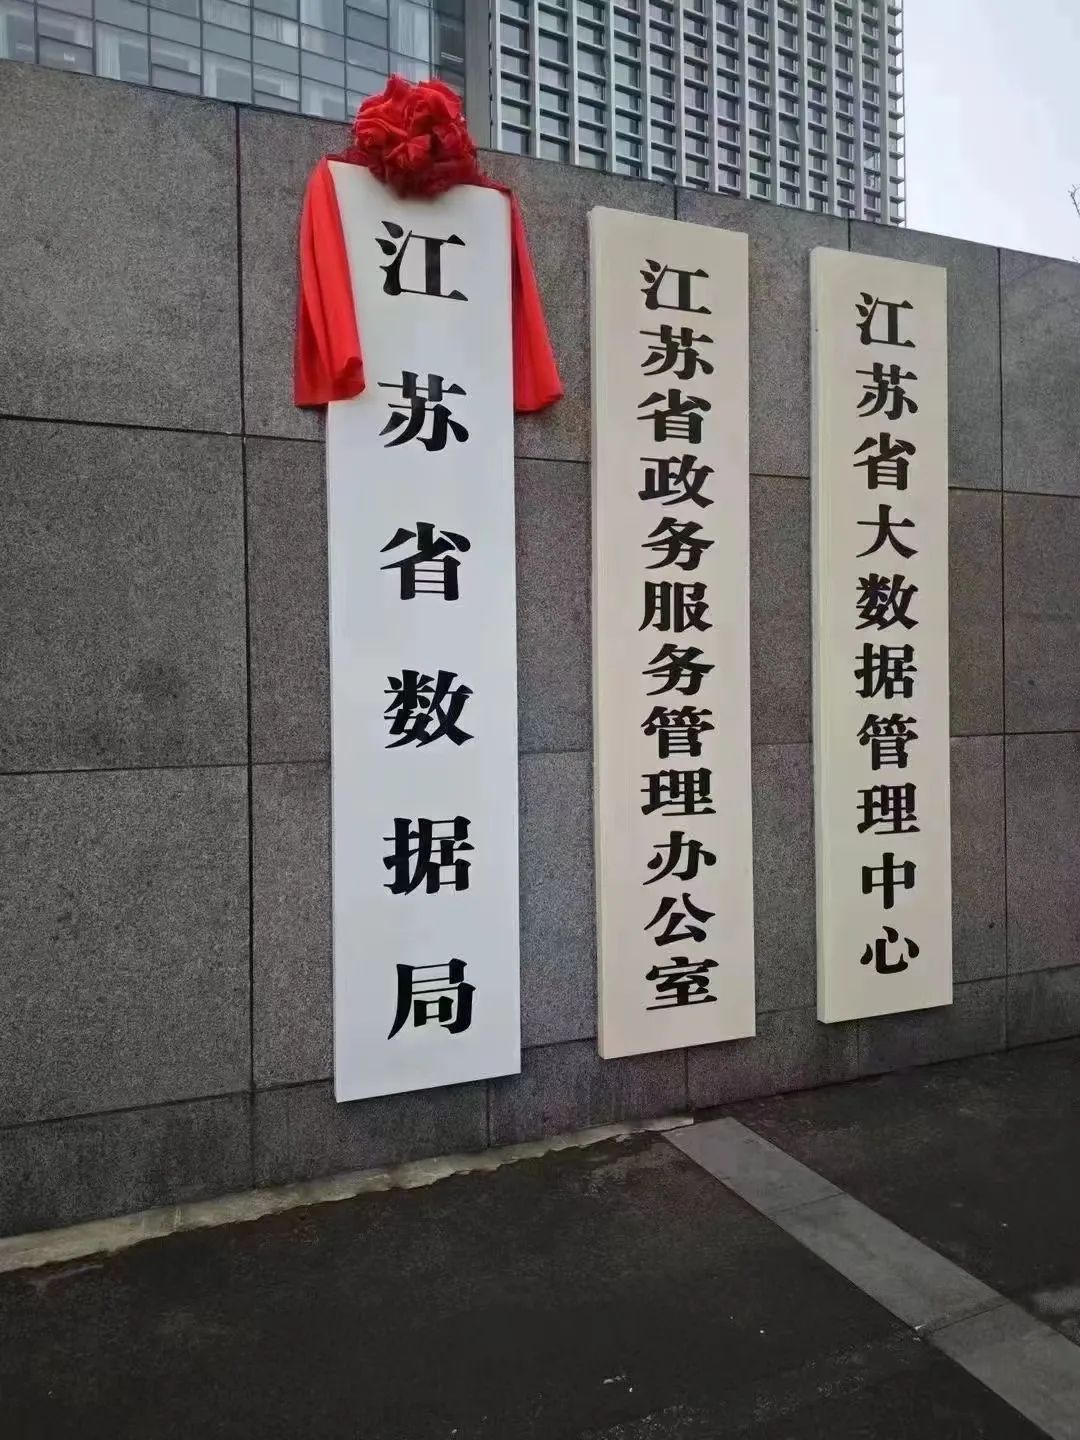 江苏省数据局正式挂牌